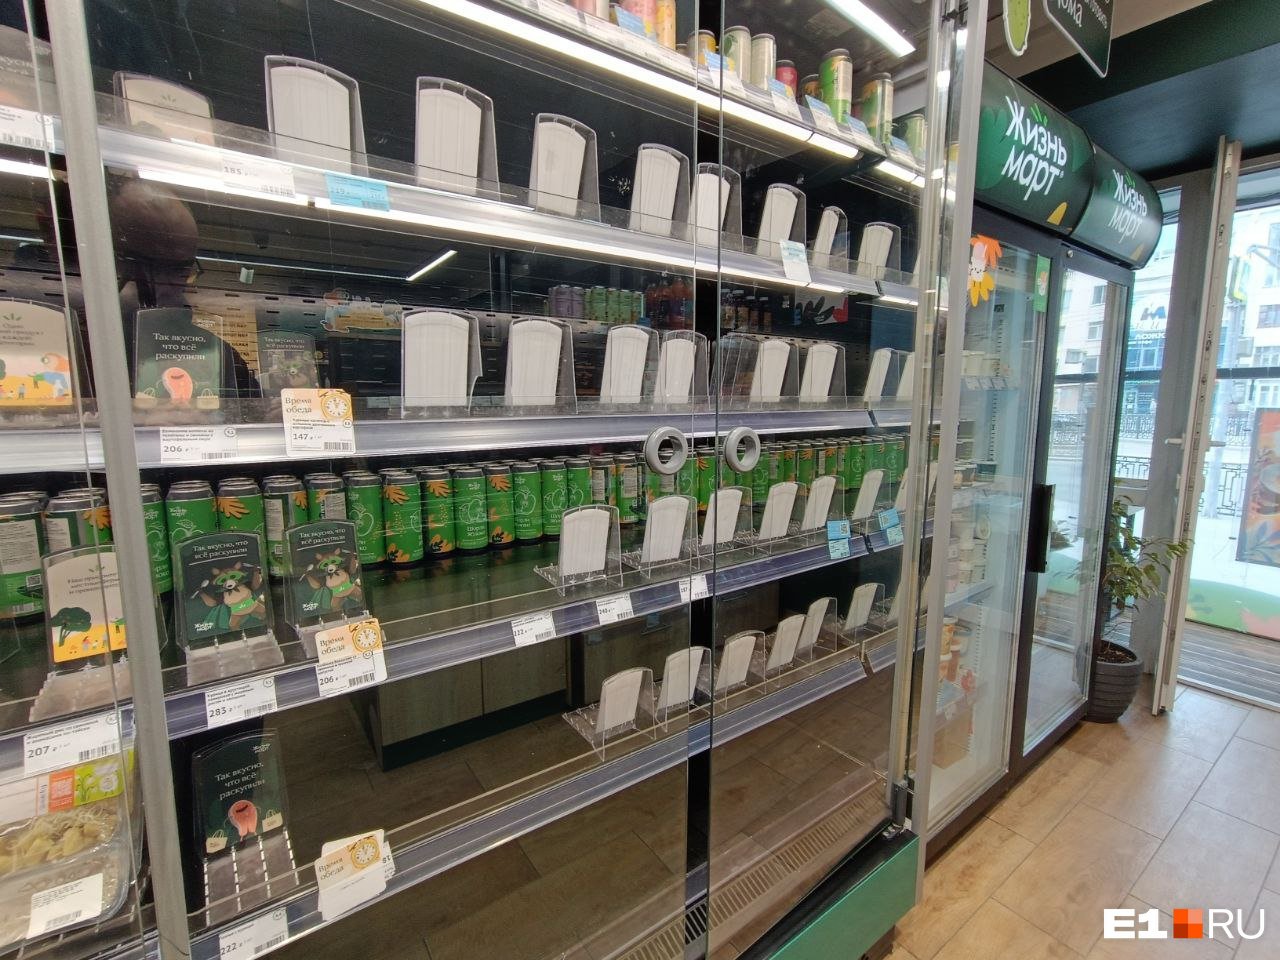 В Екатеринбурге массово отравились покупатели «Жизньмарта». Что известно о поставщиках опасных продуктов